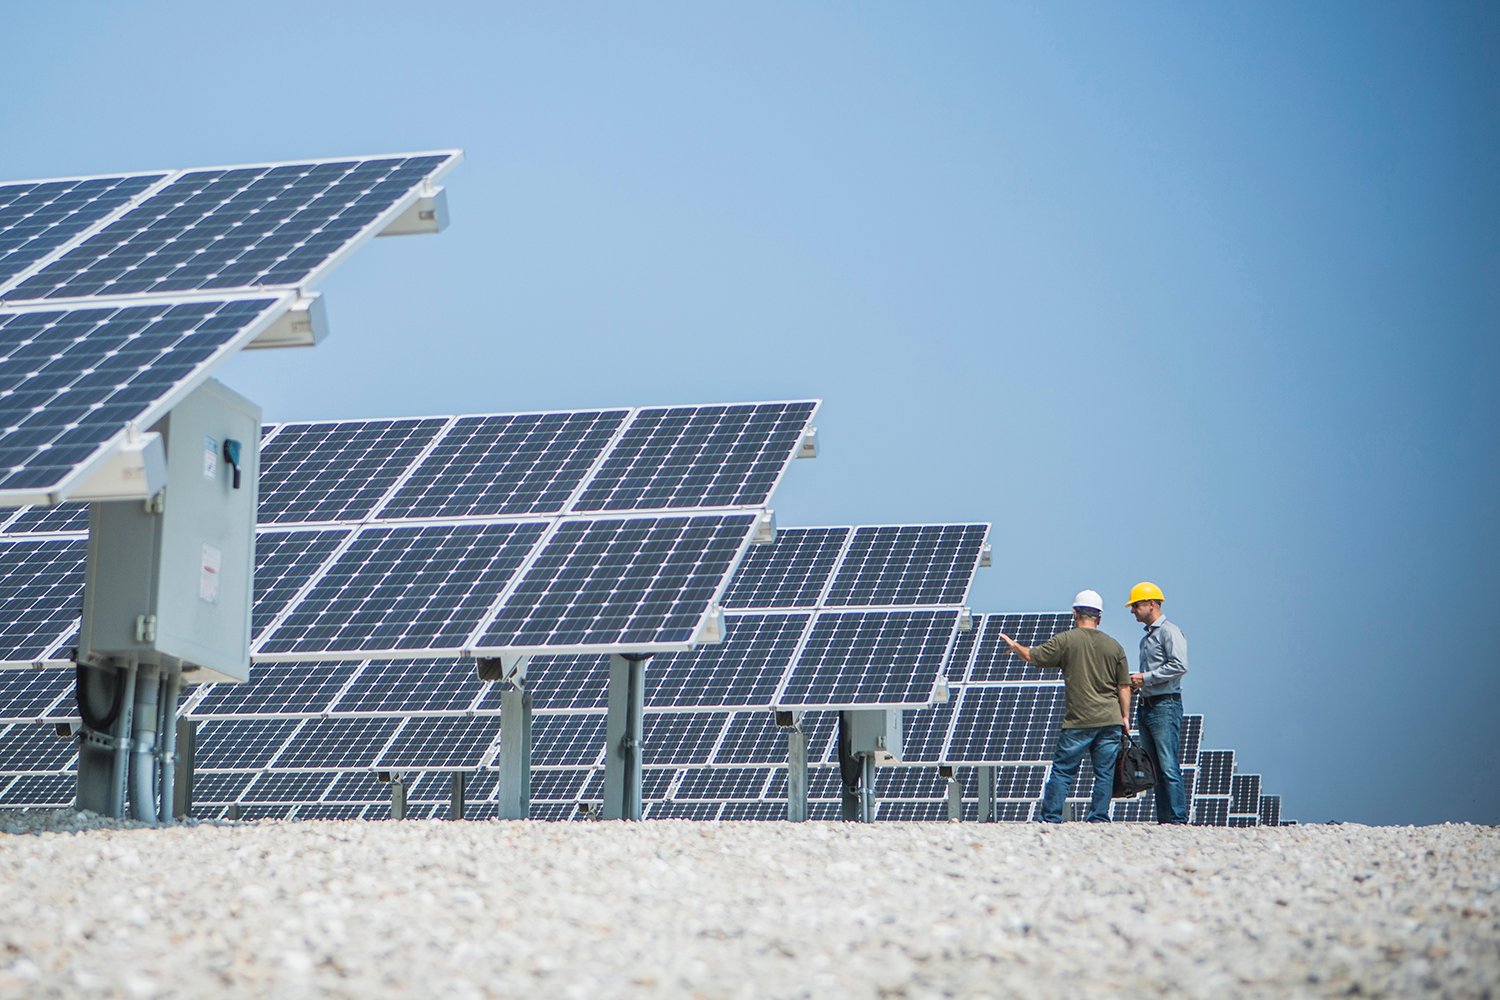 The future of solar PV